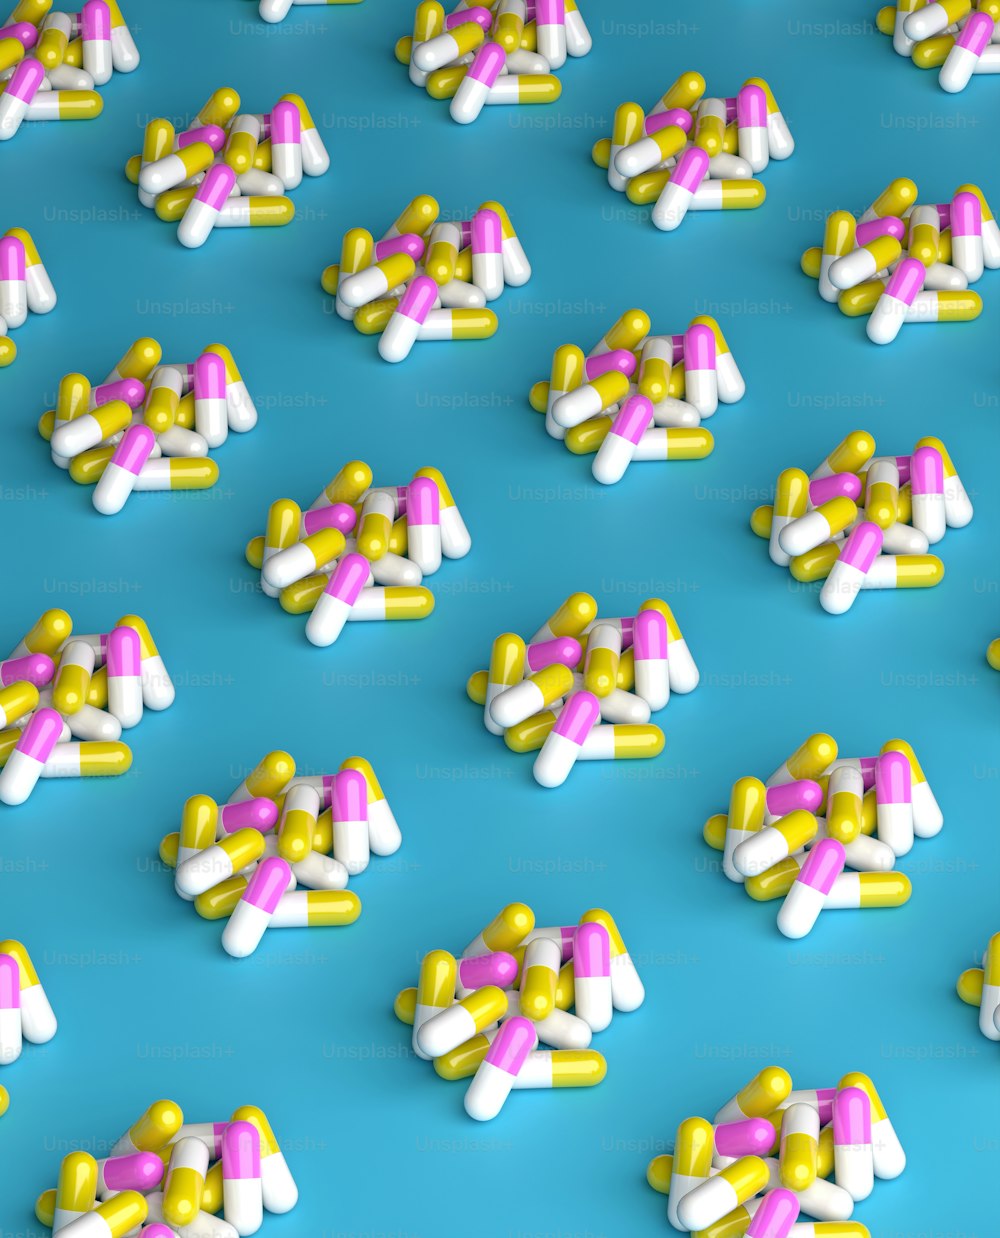 Un sacco di pillole che si trovano su una superficie blu